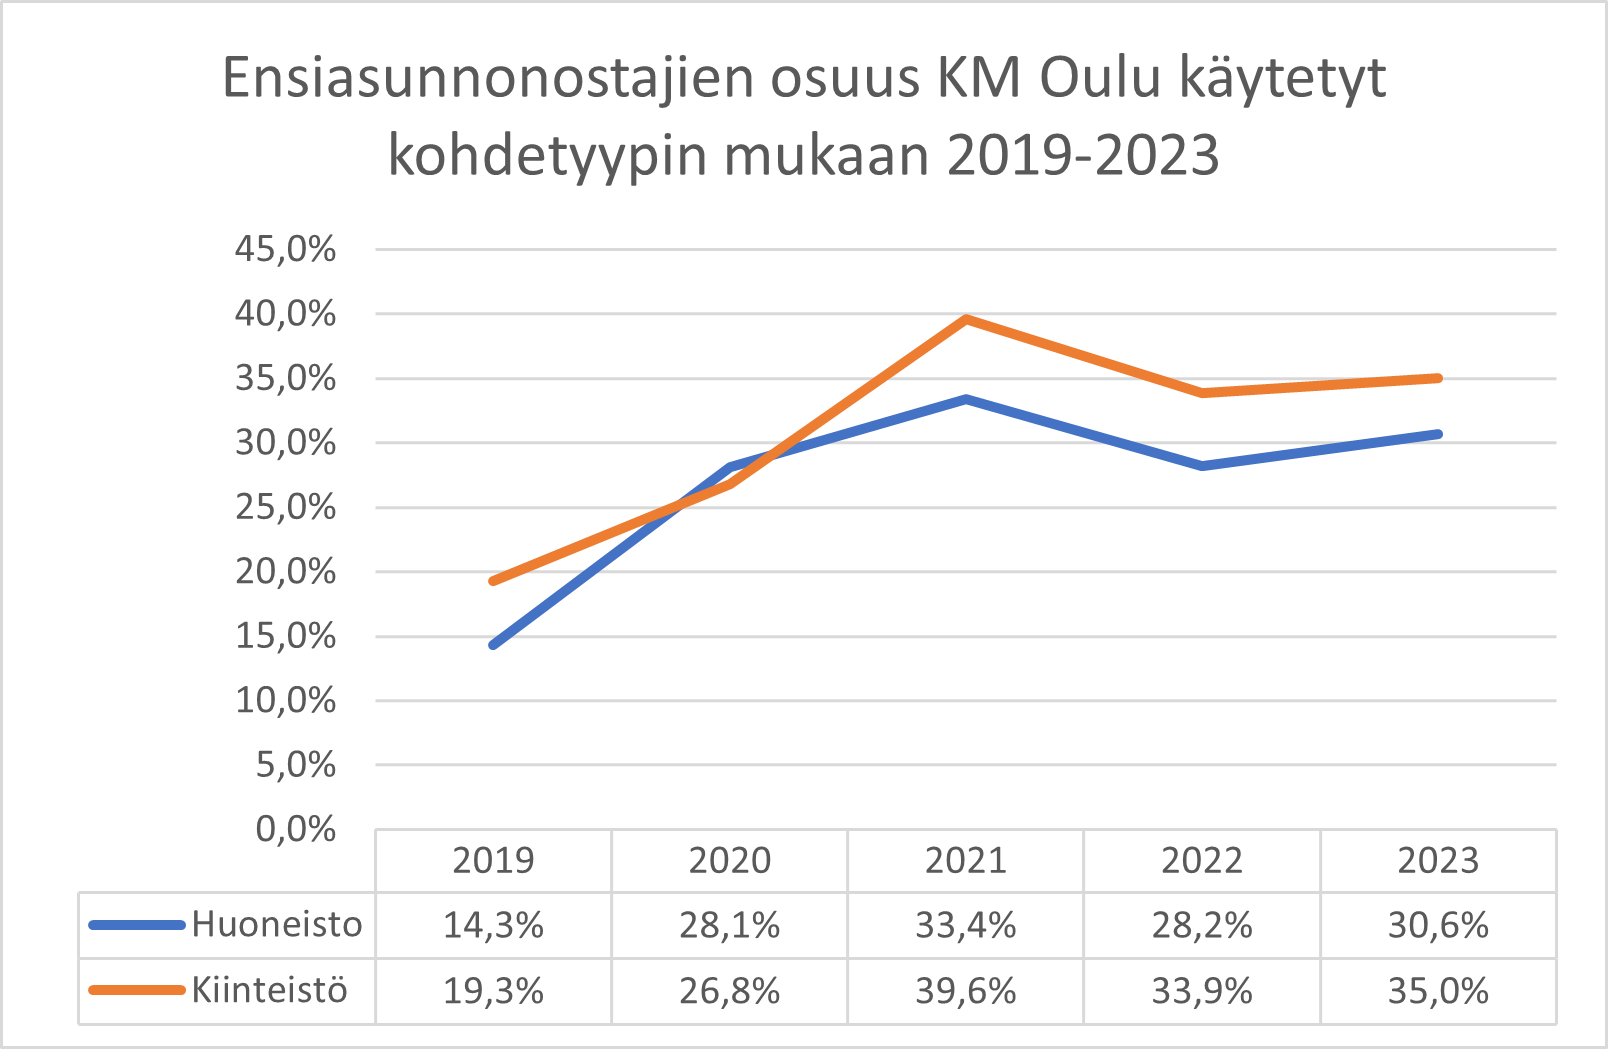 Ensiasunnonostajien osuus KM Oulu käytetyt kohdetyypin mukaan 2019-2023